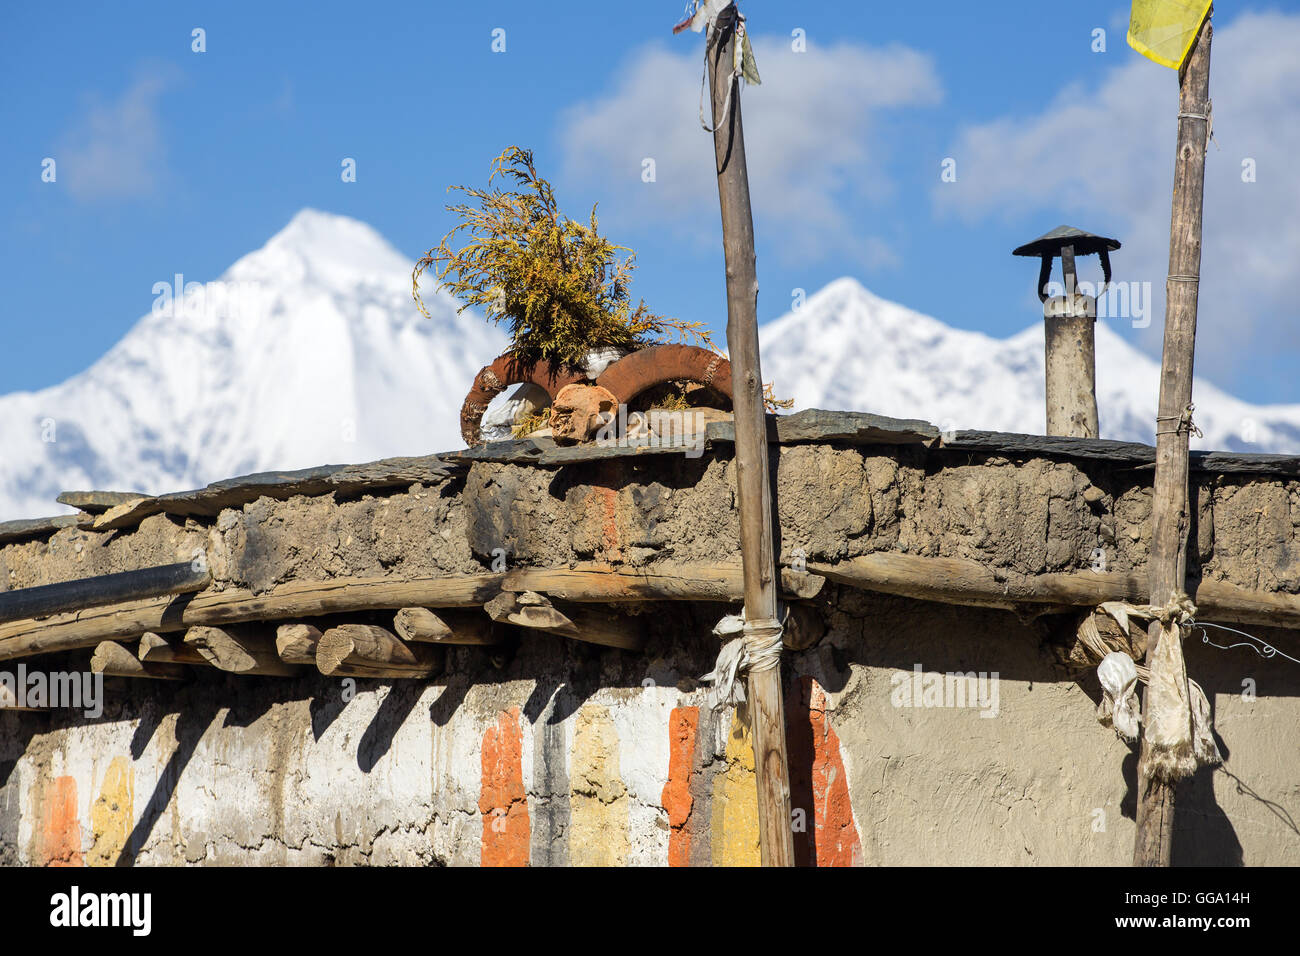 Cranio di Ram sul tetto della casa in inferiore regione Mustang in Nepal Foto Stock